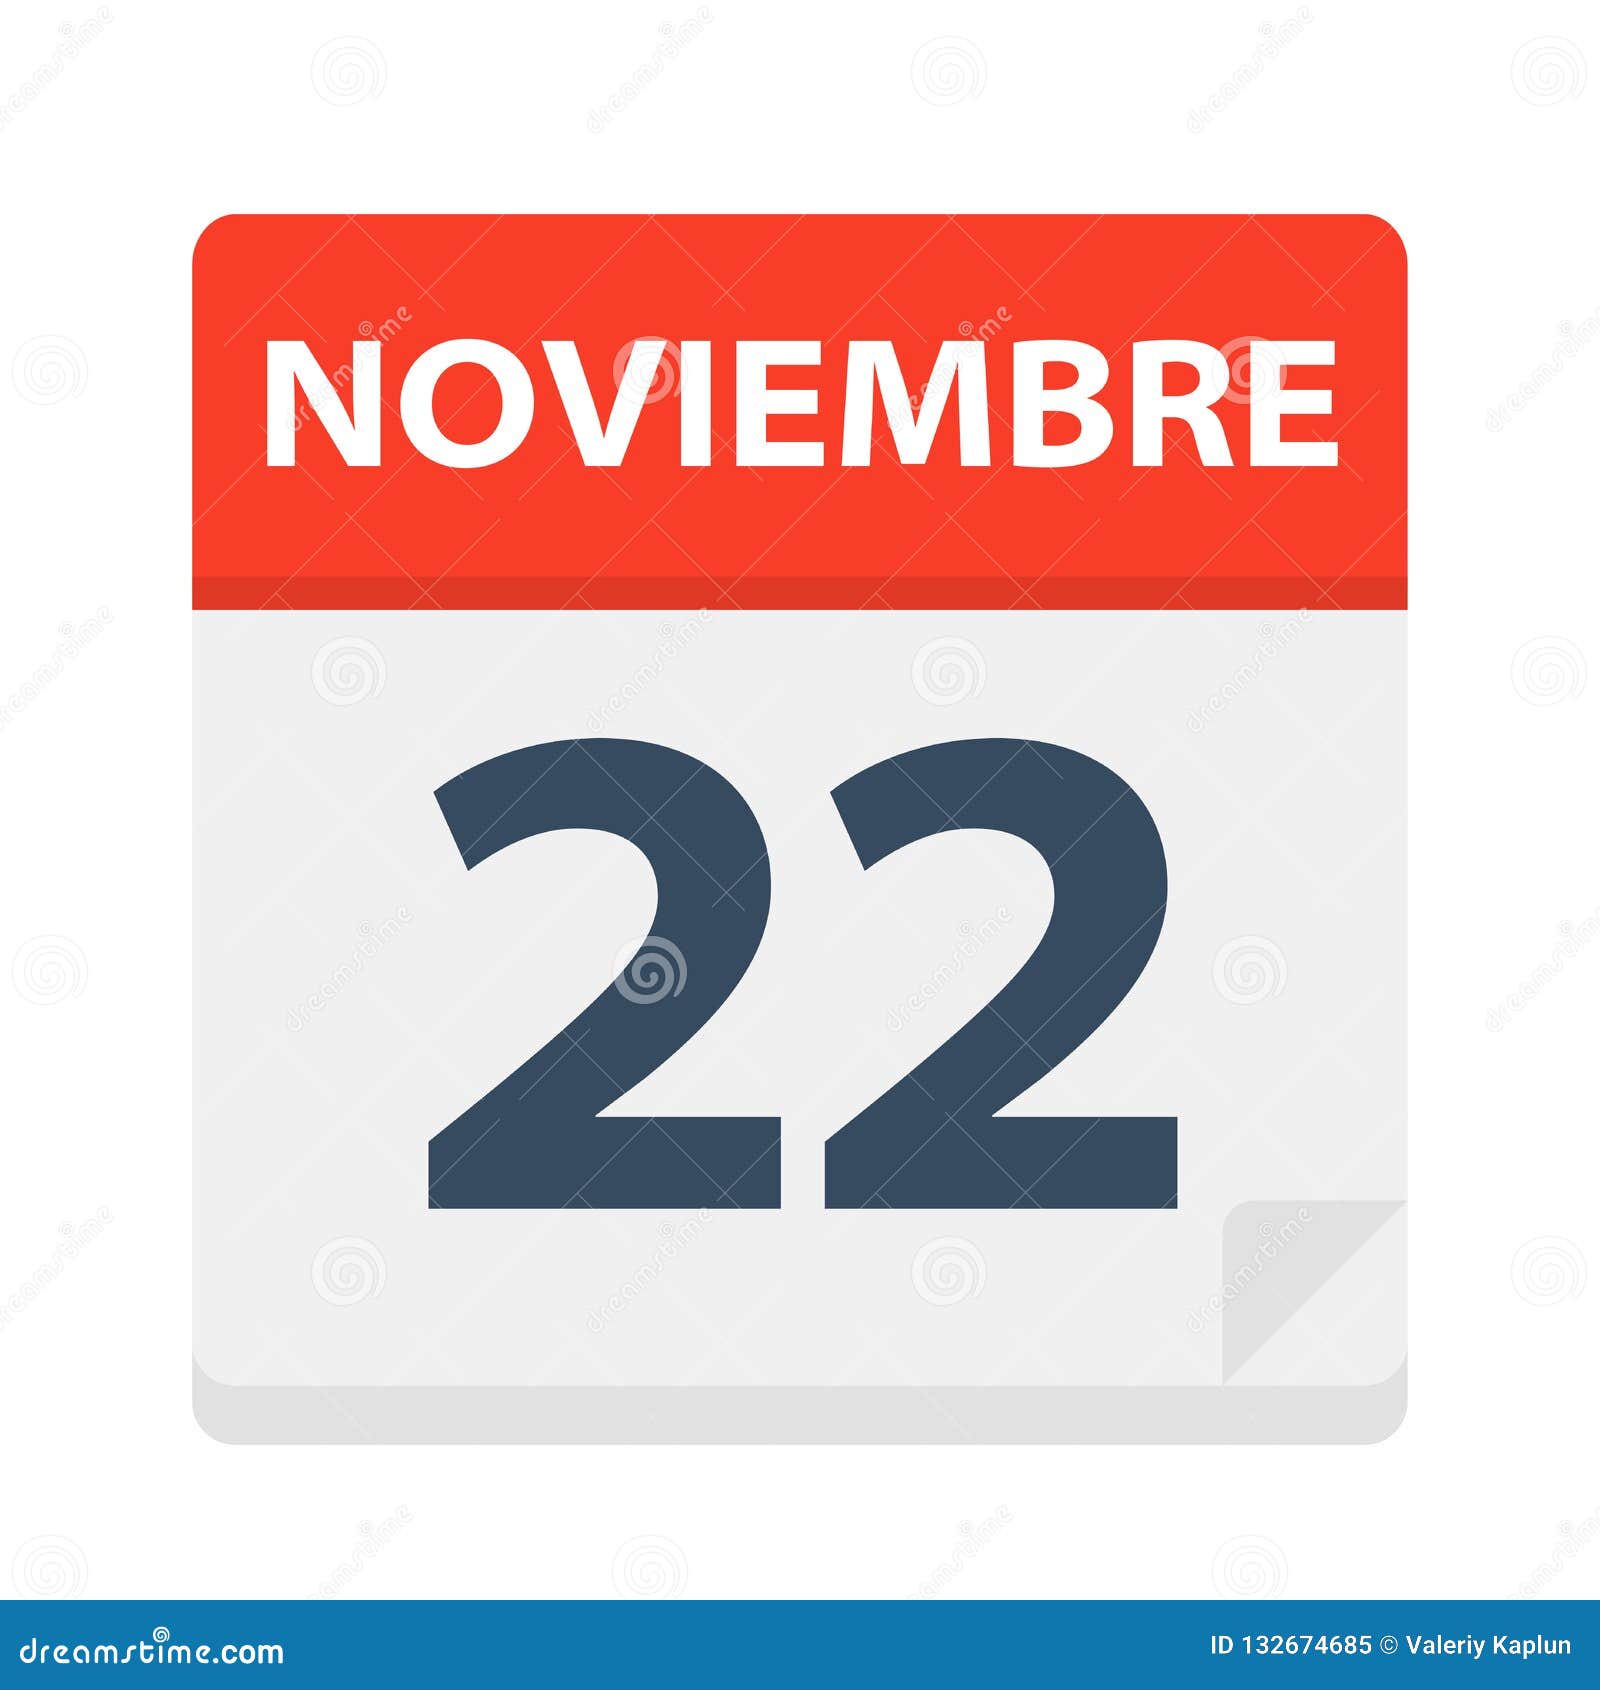 noviembre 22 - calendar icon - november 22.   of spanish calendar leaf